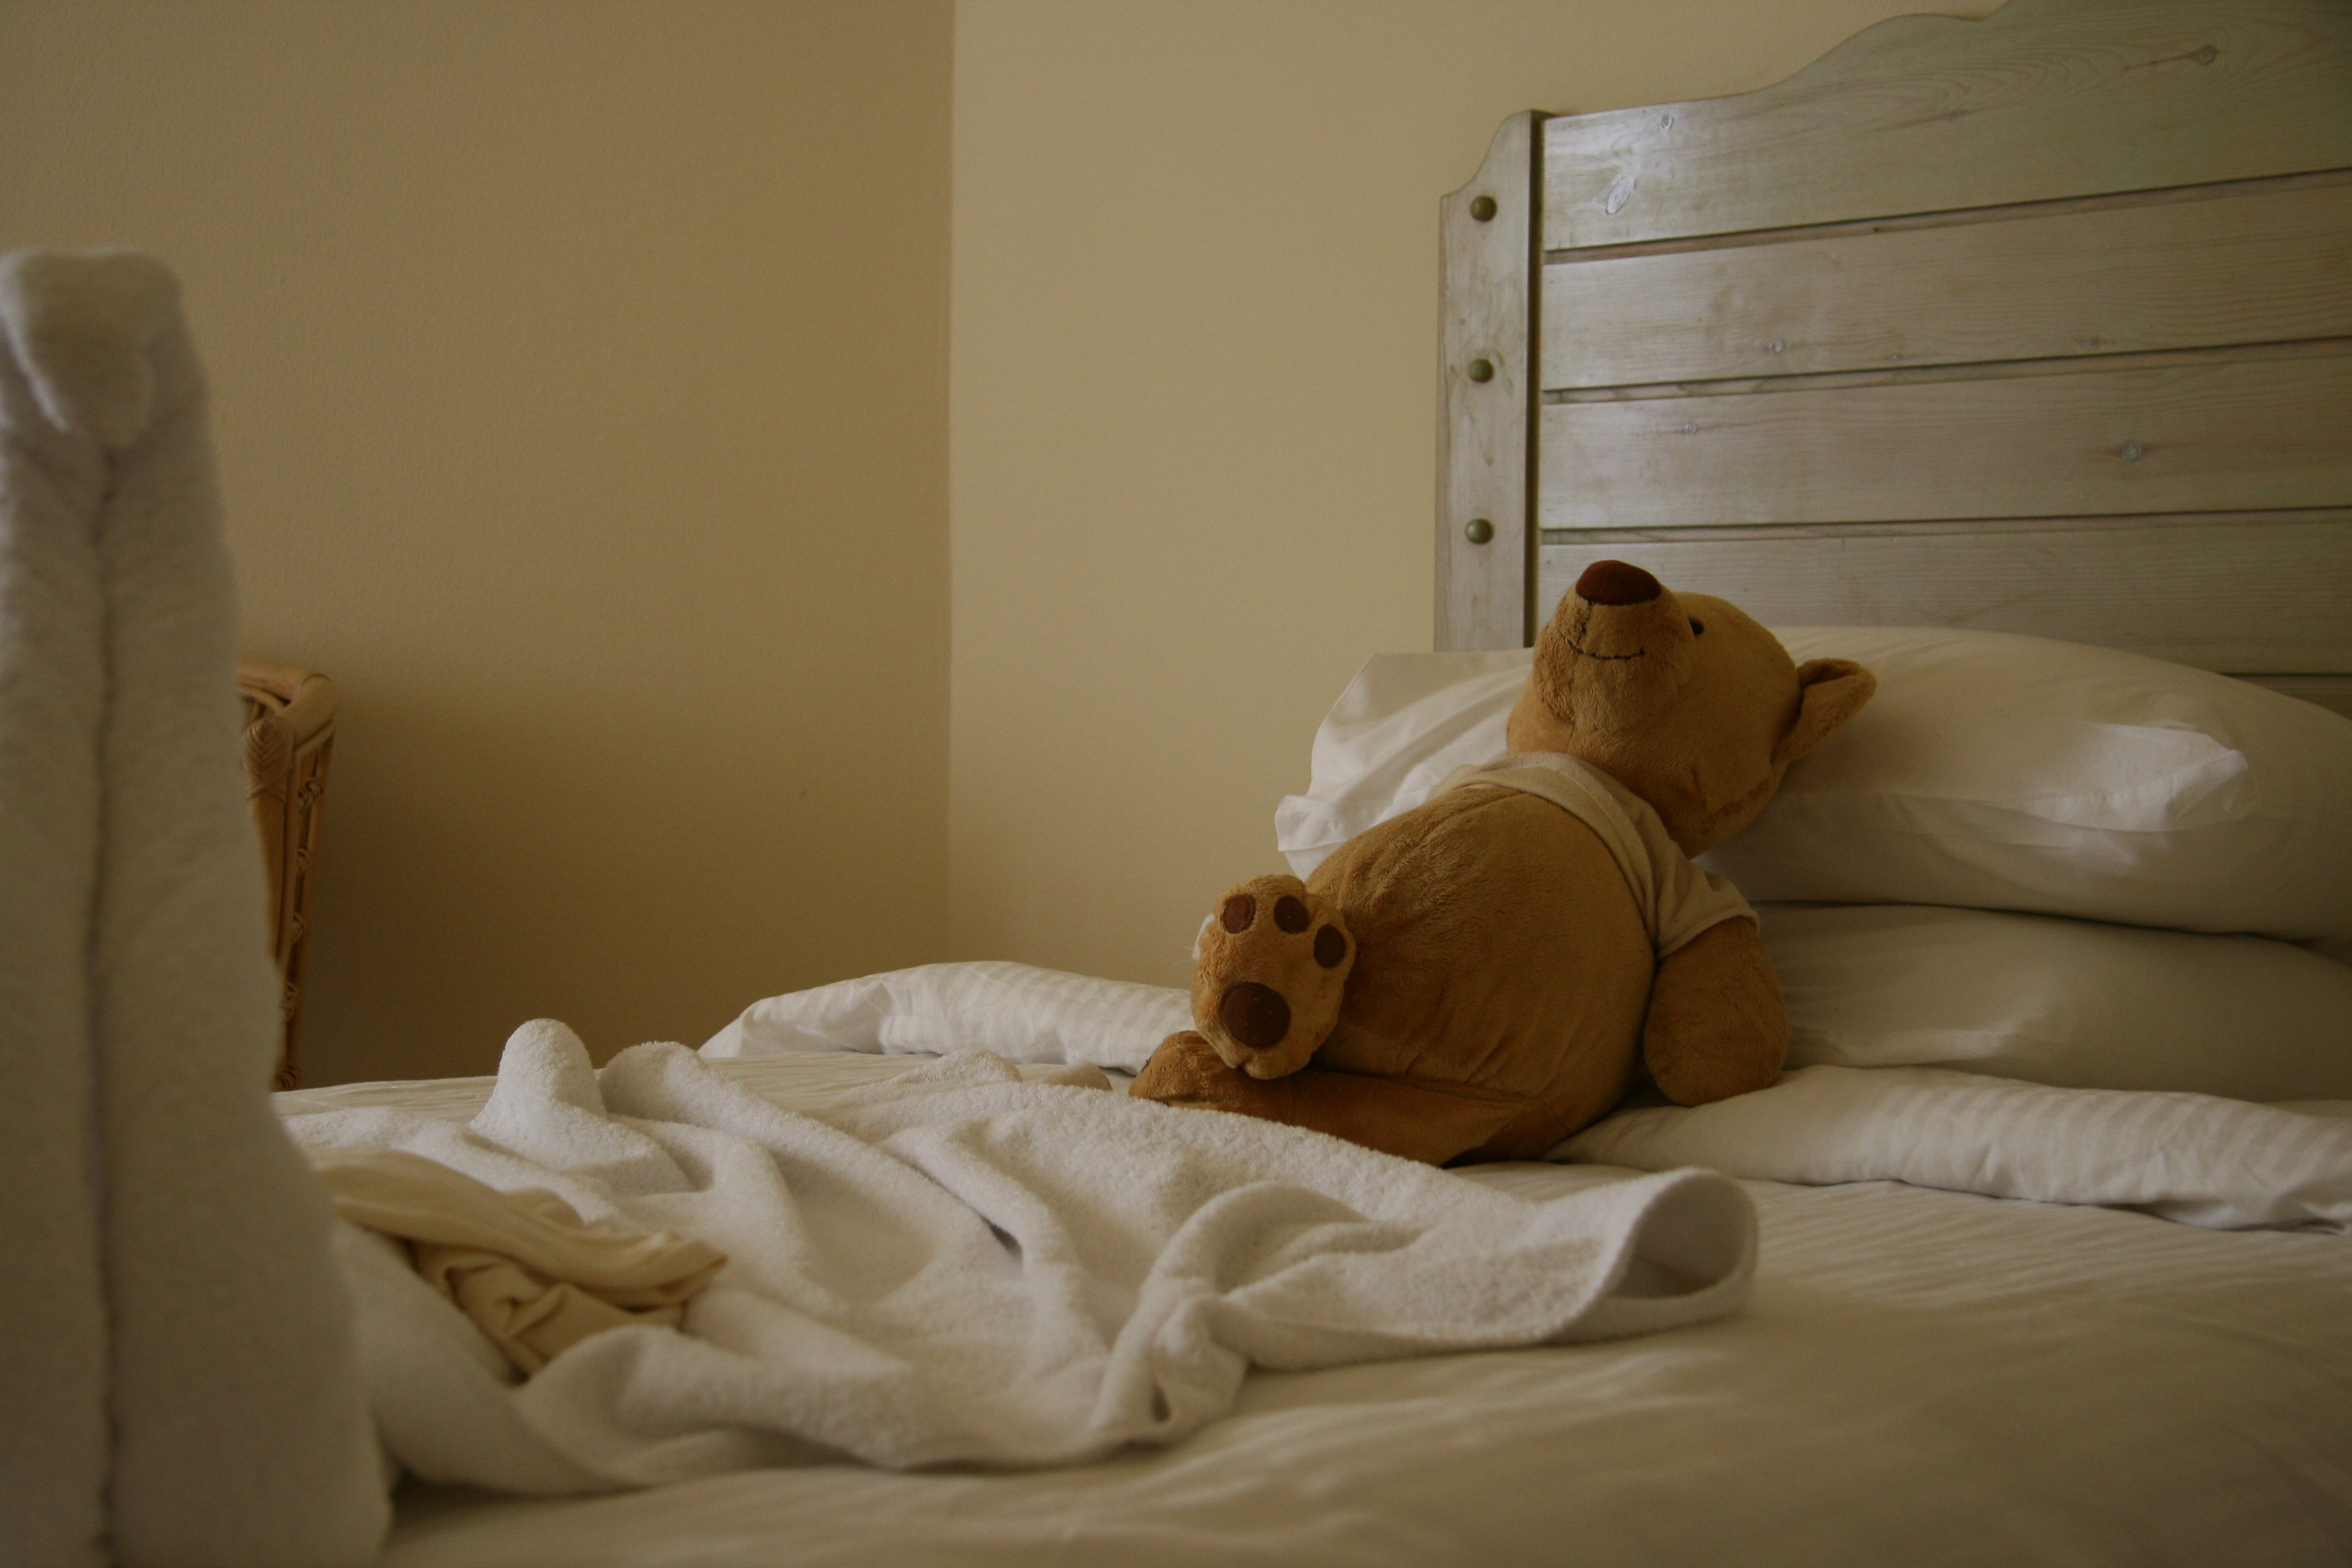 Стала спать крепко. Медвежонок в постели. Кровать "мишки". Валяться в кровати.